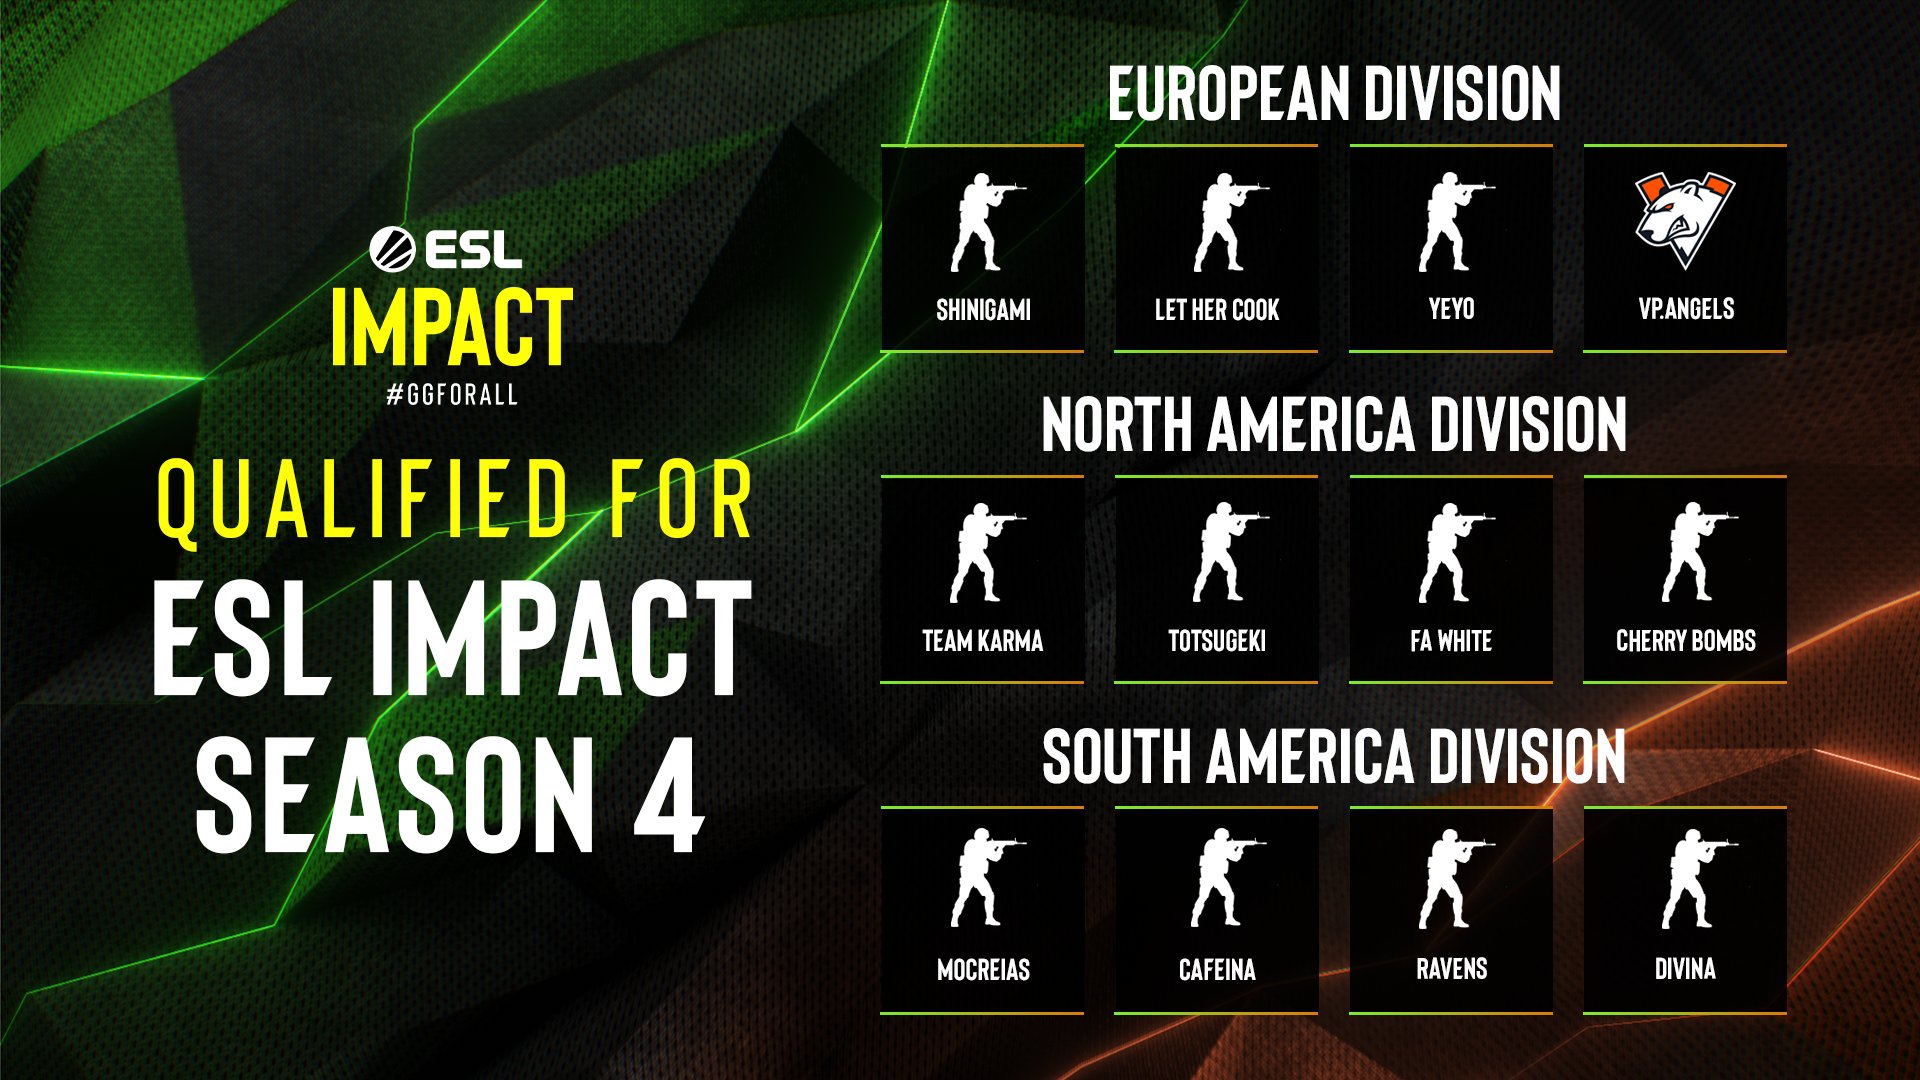 ESL chystá start Impact League Season 4. Jaké týmy uvidíme v akci a o co se bude hrát?